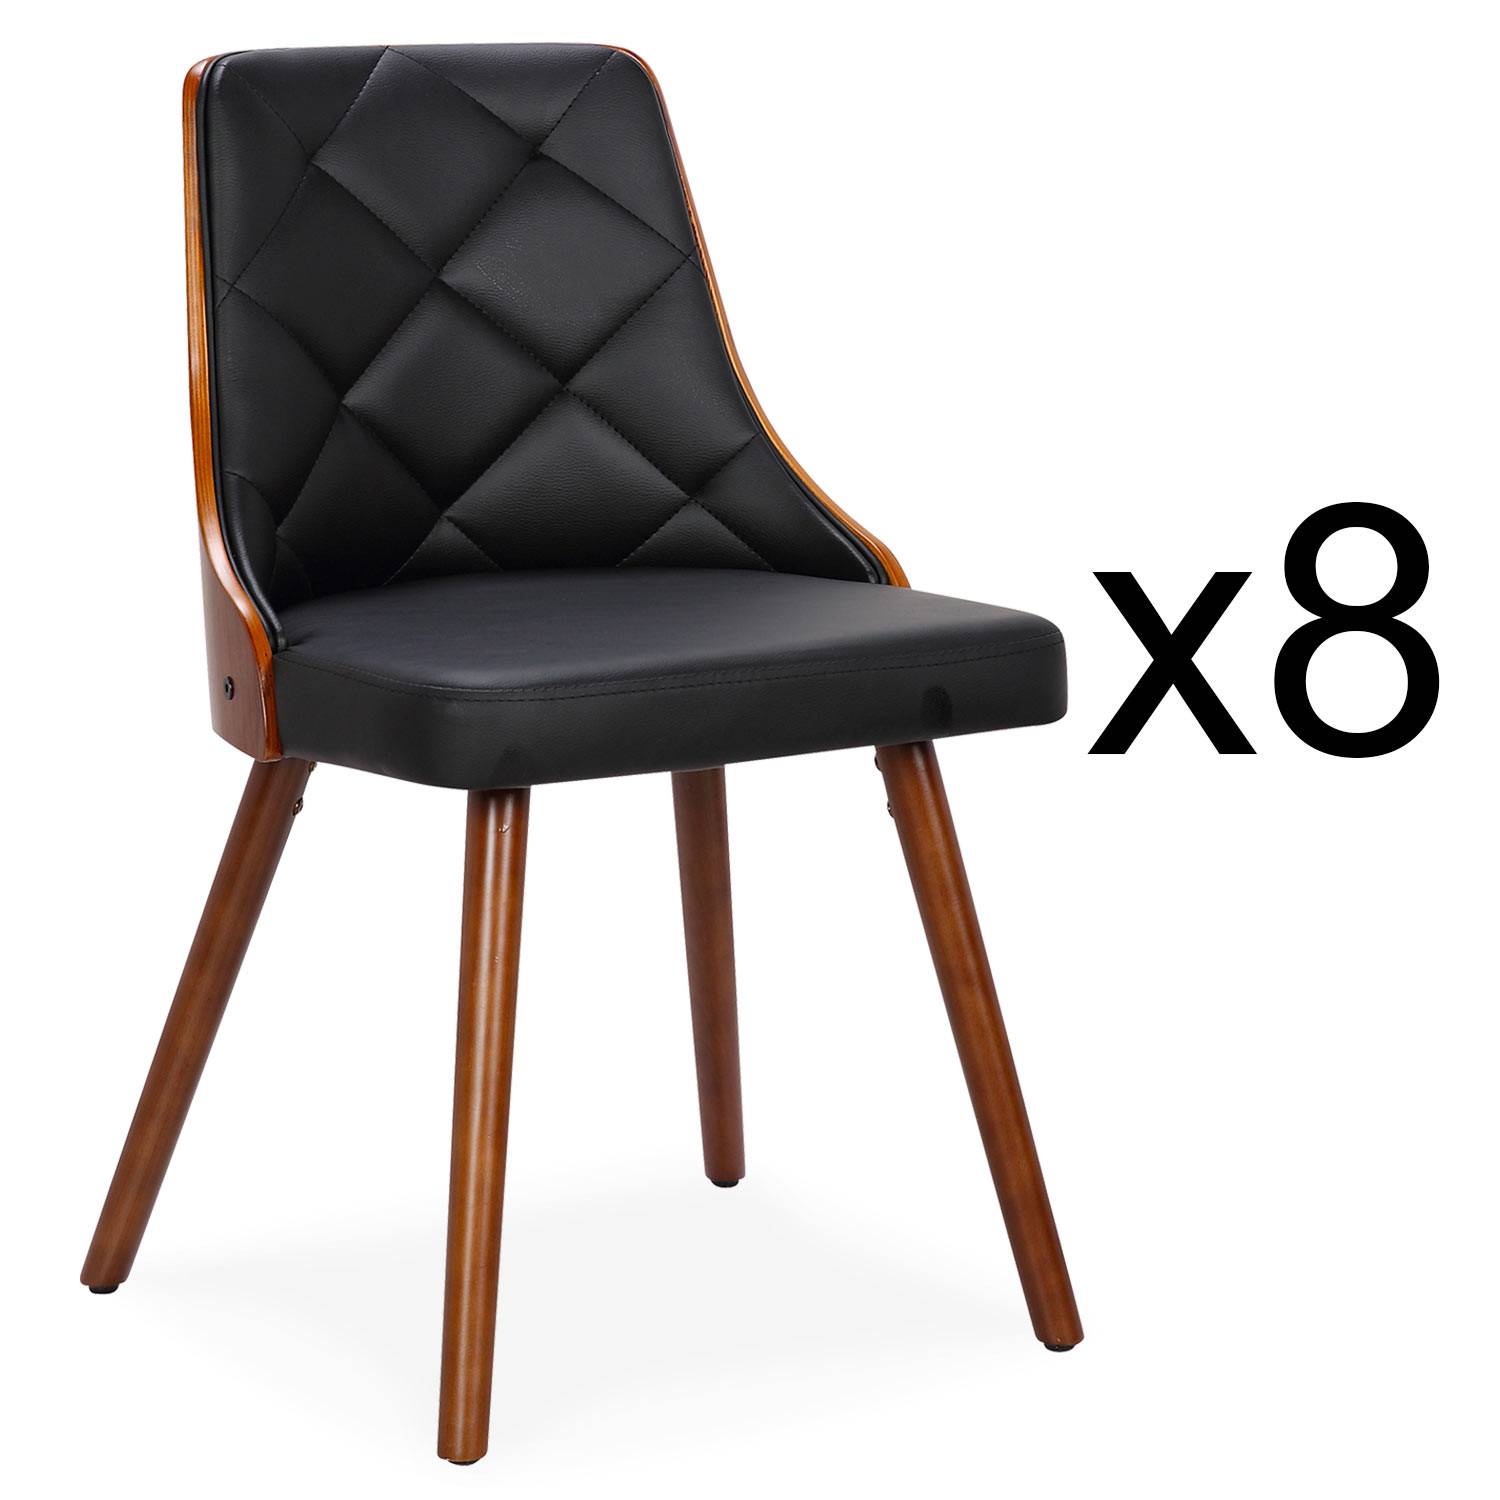 Lote de 8 sillas escandinavas Lalix de madera avellana y negra